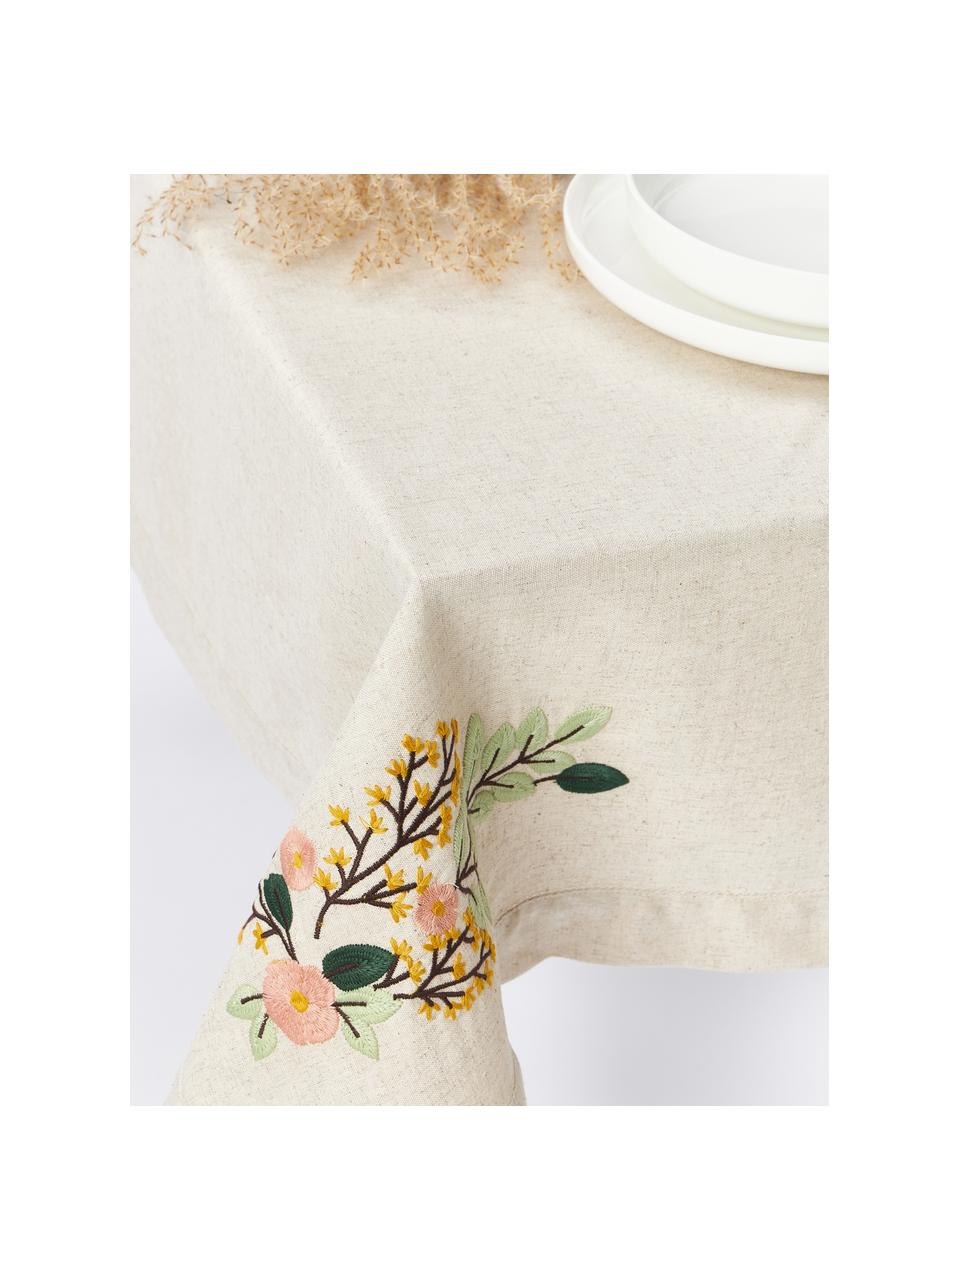 Nappe avec motif à fleurs brodé Argo, 75 % coton certifié BCI, 25 % lin, Beige clair, fleurs-motif figuratif, 6-8 personnes (long. 240 x larg. 140 cm)